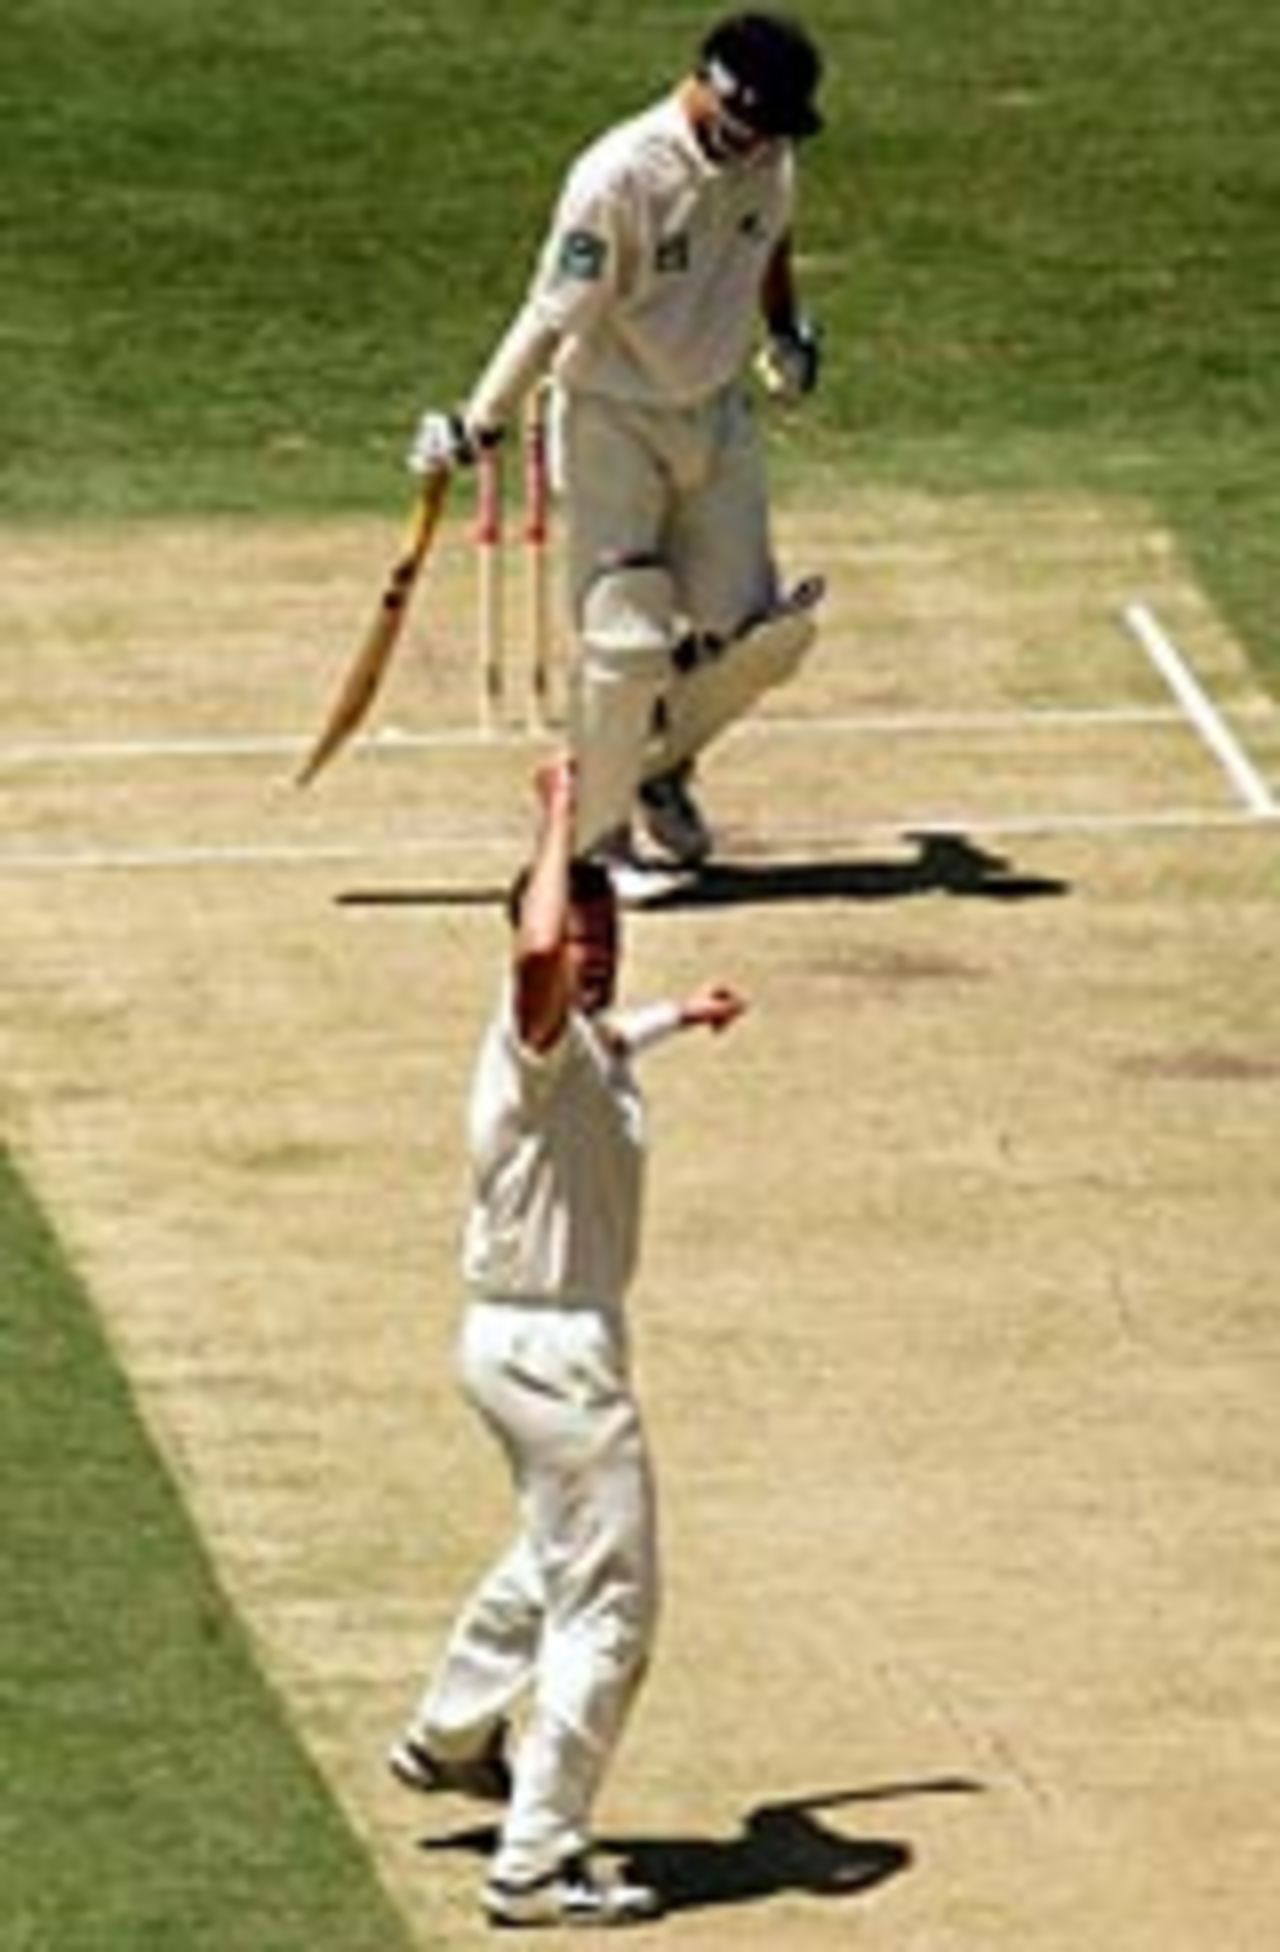 Michael Kasprowicz dismisses Daniel Vettori, Australia v New Zealand, 1st Test, Brisbane, Novemeber 19, 2004